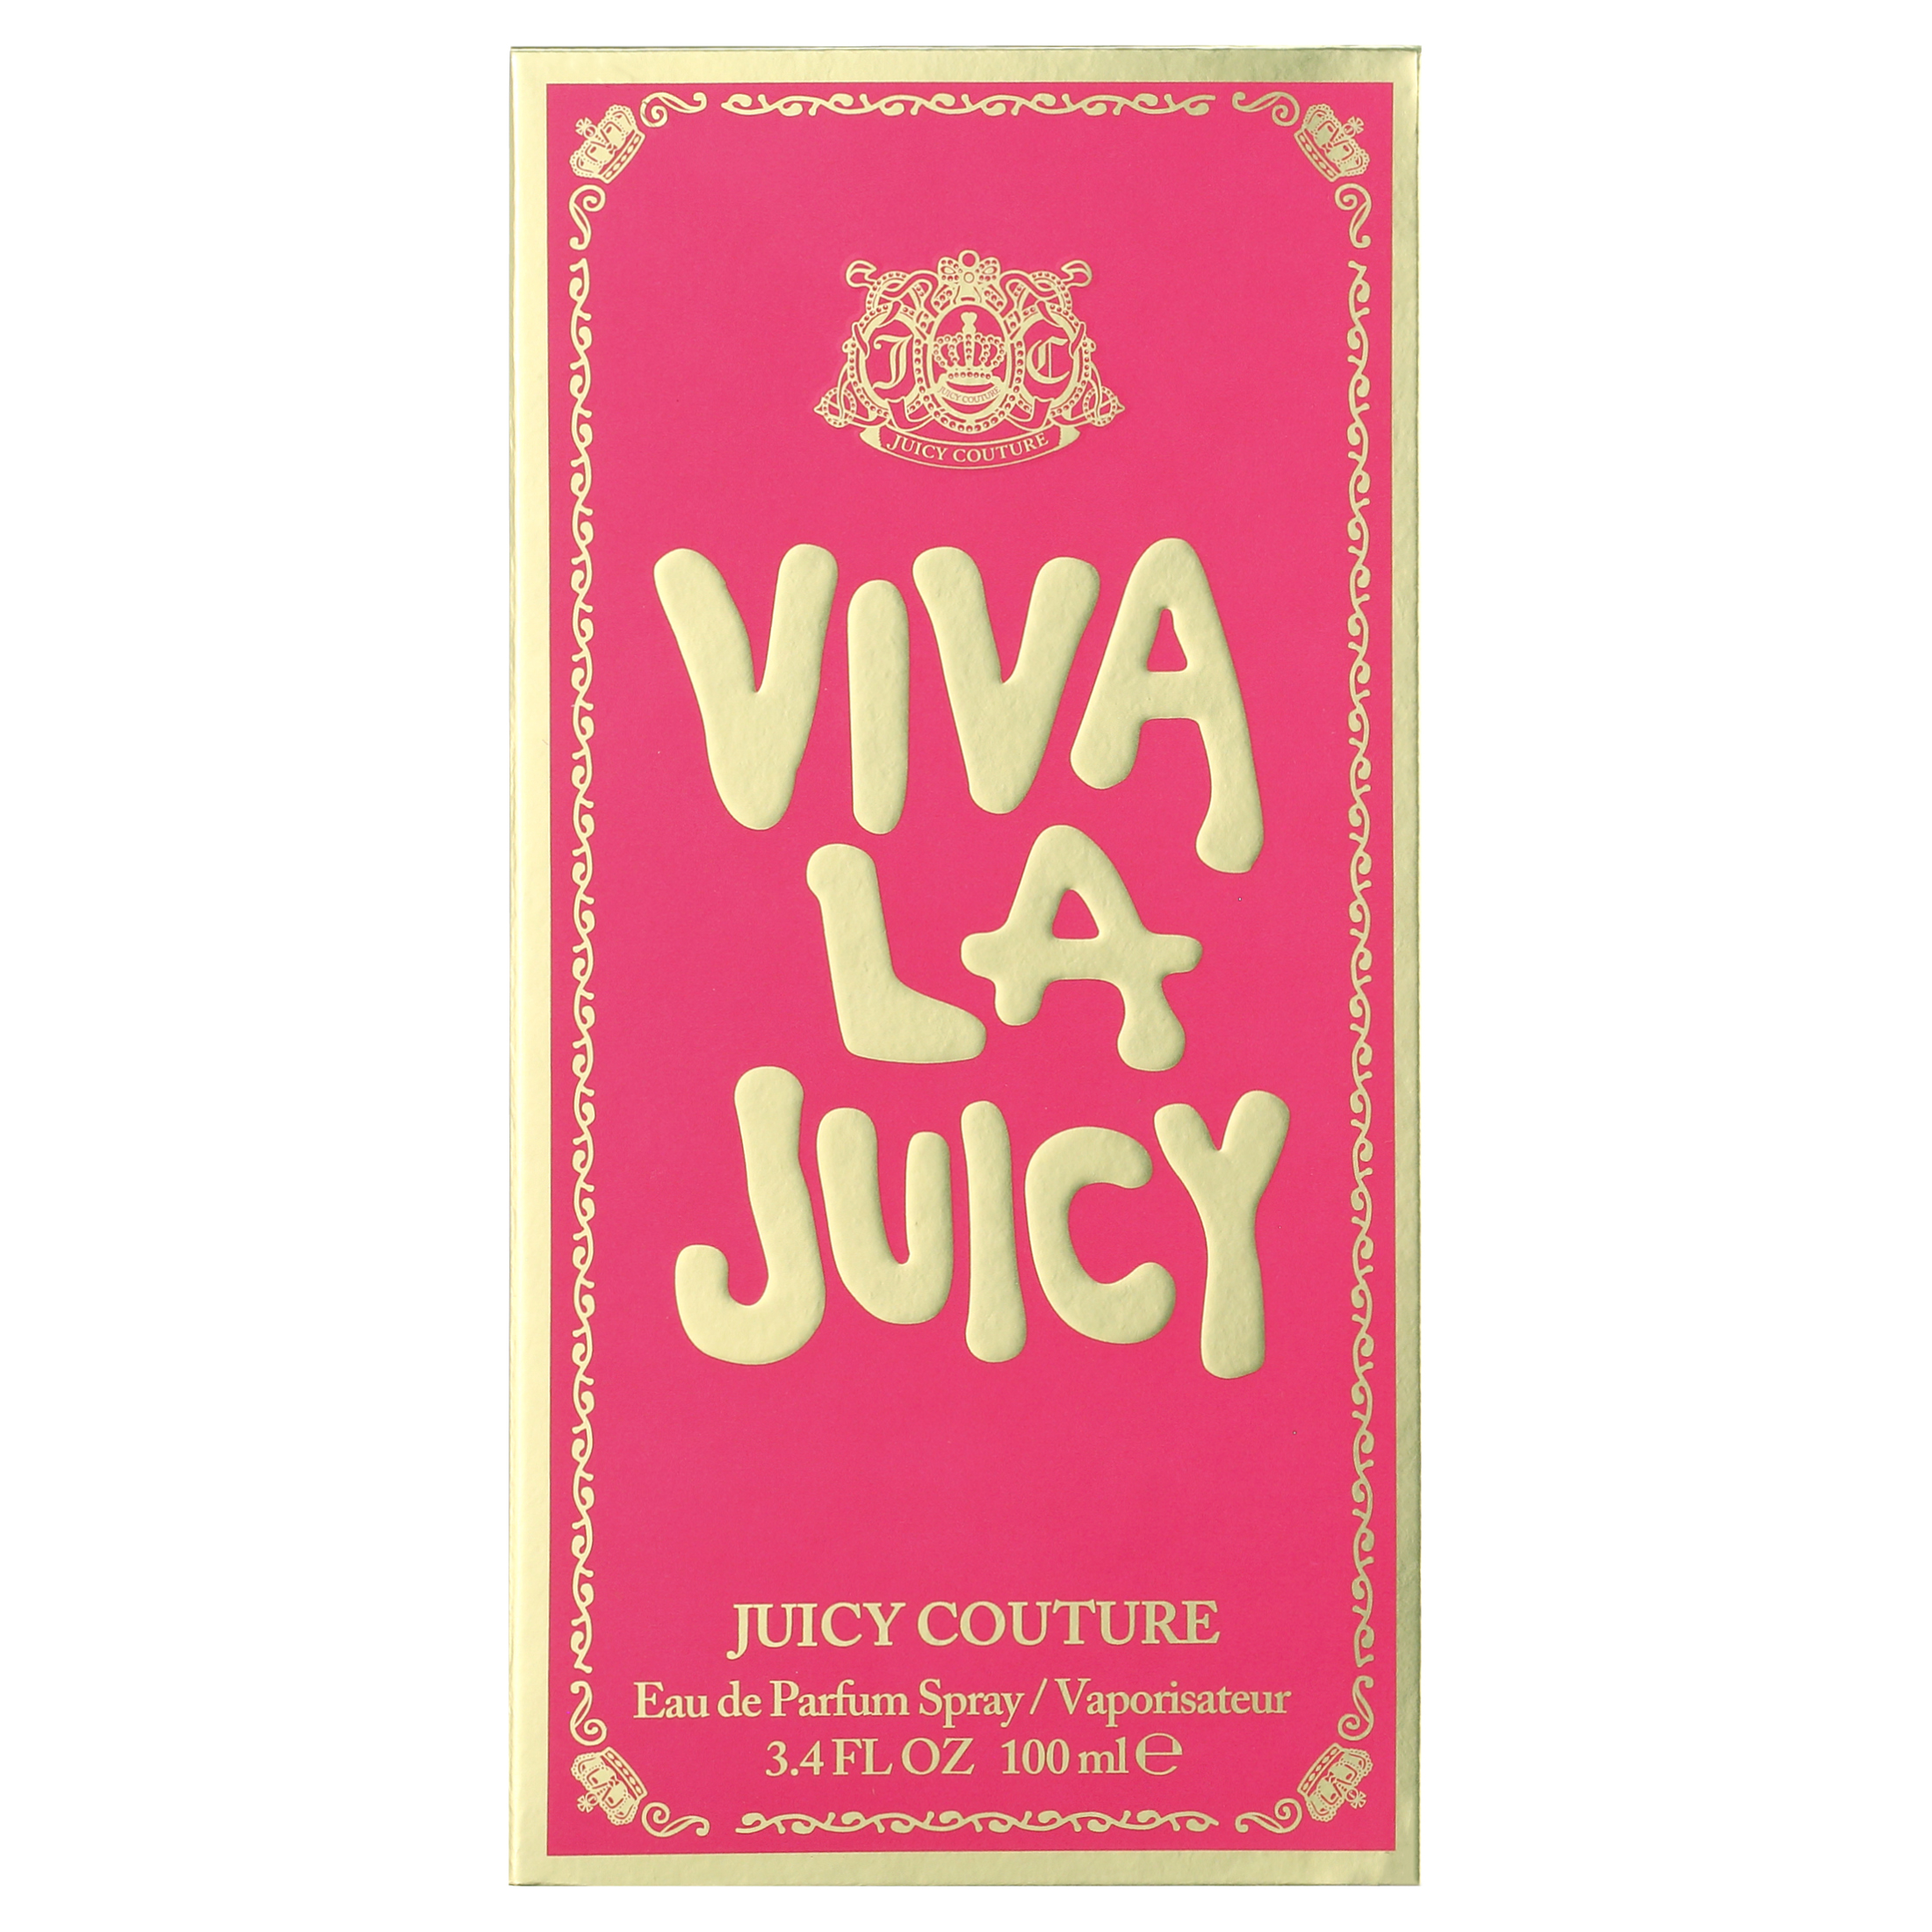 Juicy Couture Viva La Juicy Eau de Parfum, Perfume for Women, 3.4 oz - image 2 of 5